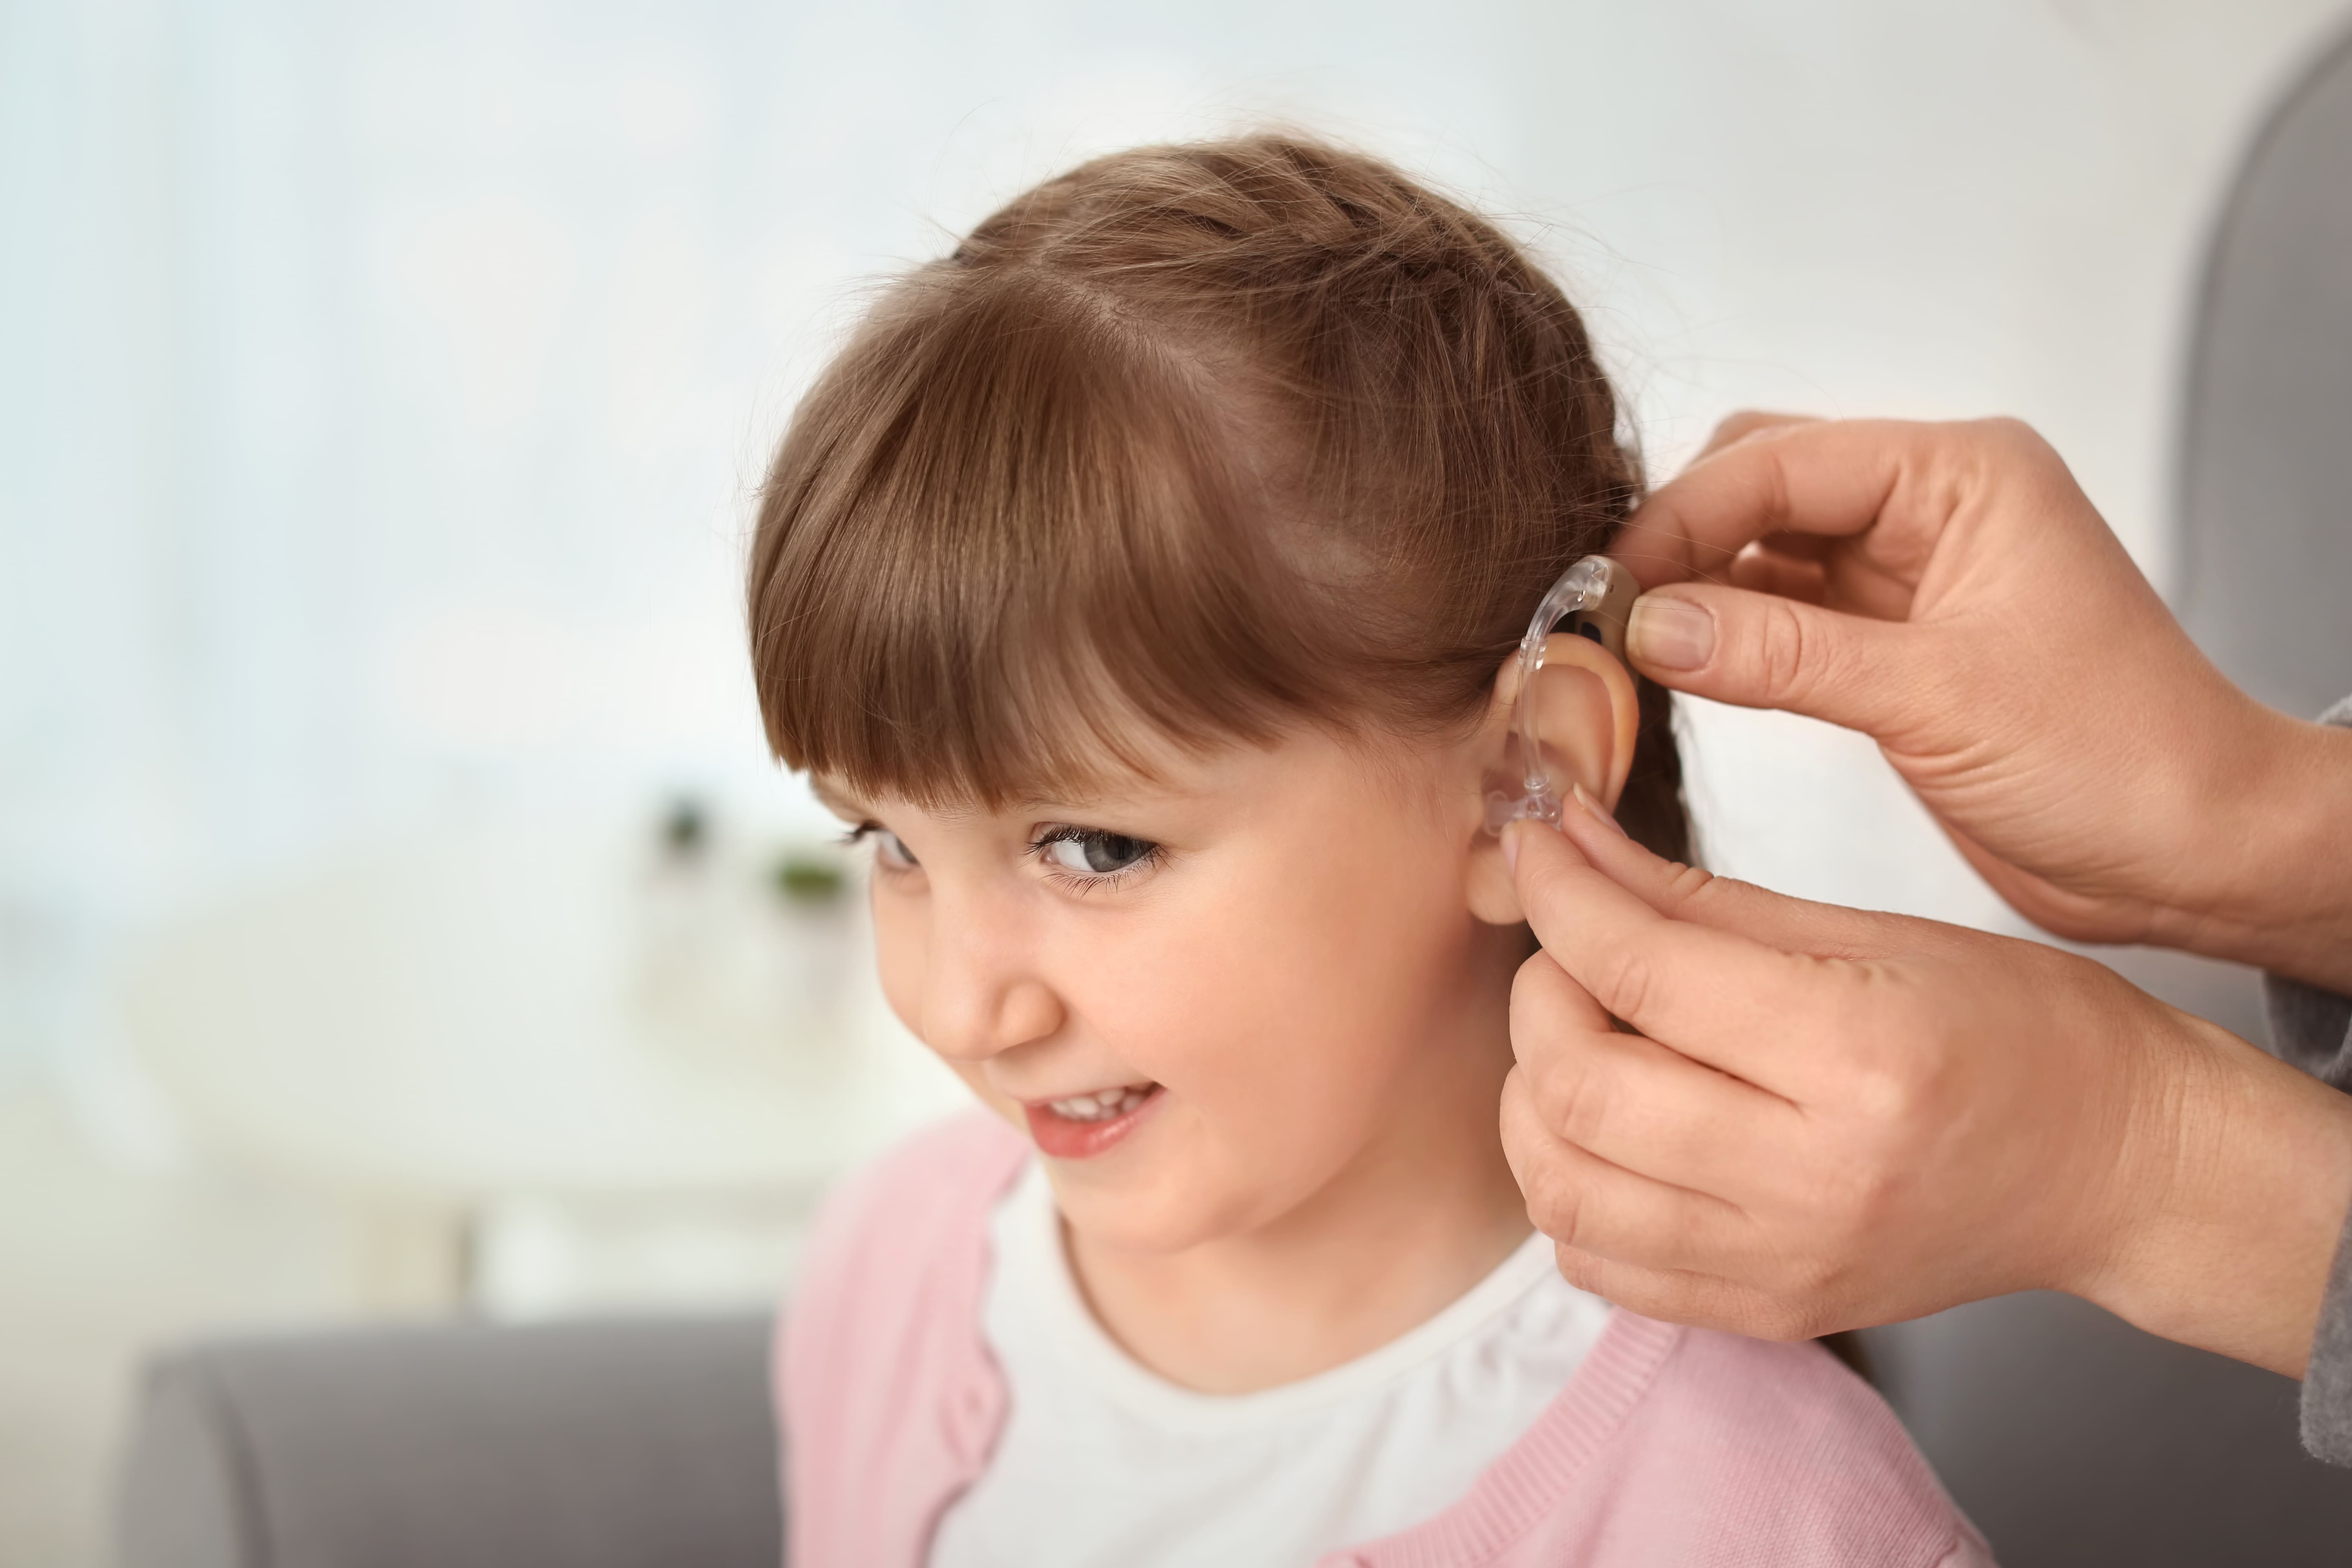 Заболевания слуха и зрения. Дети с нарушением слуха.. Ребёнок сос луховым аппаратом. Слуховой аппарат для детей. Девочка со слуховым аппаратом.